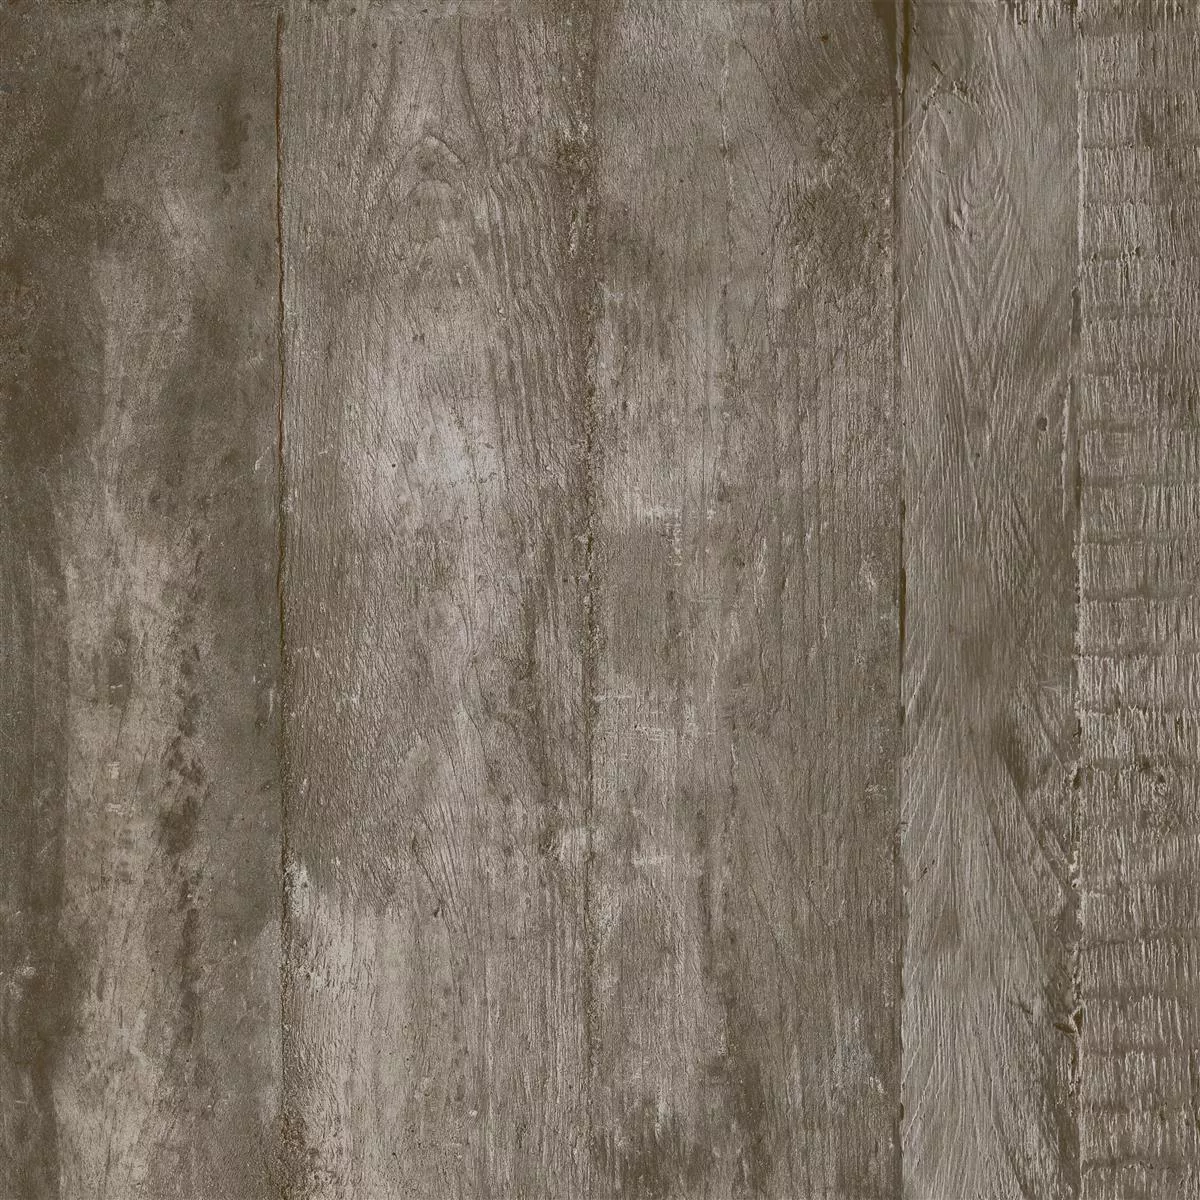 Podlahové Dlaždice Gorki Dřevěný Vzhled 60x60cm Glazovaný Hnědá